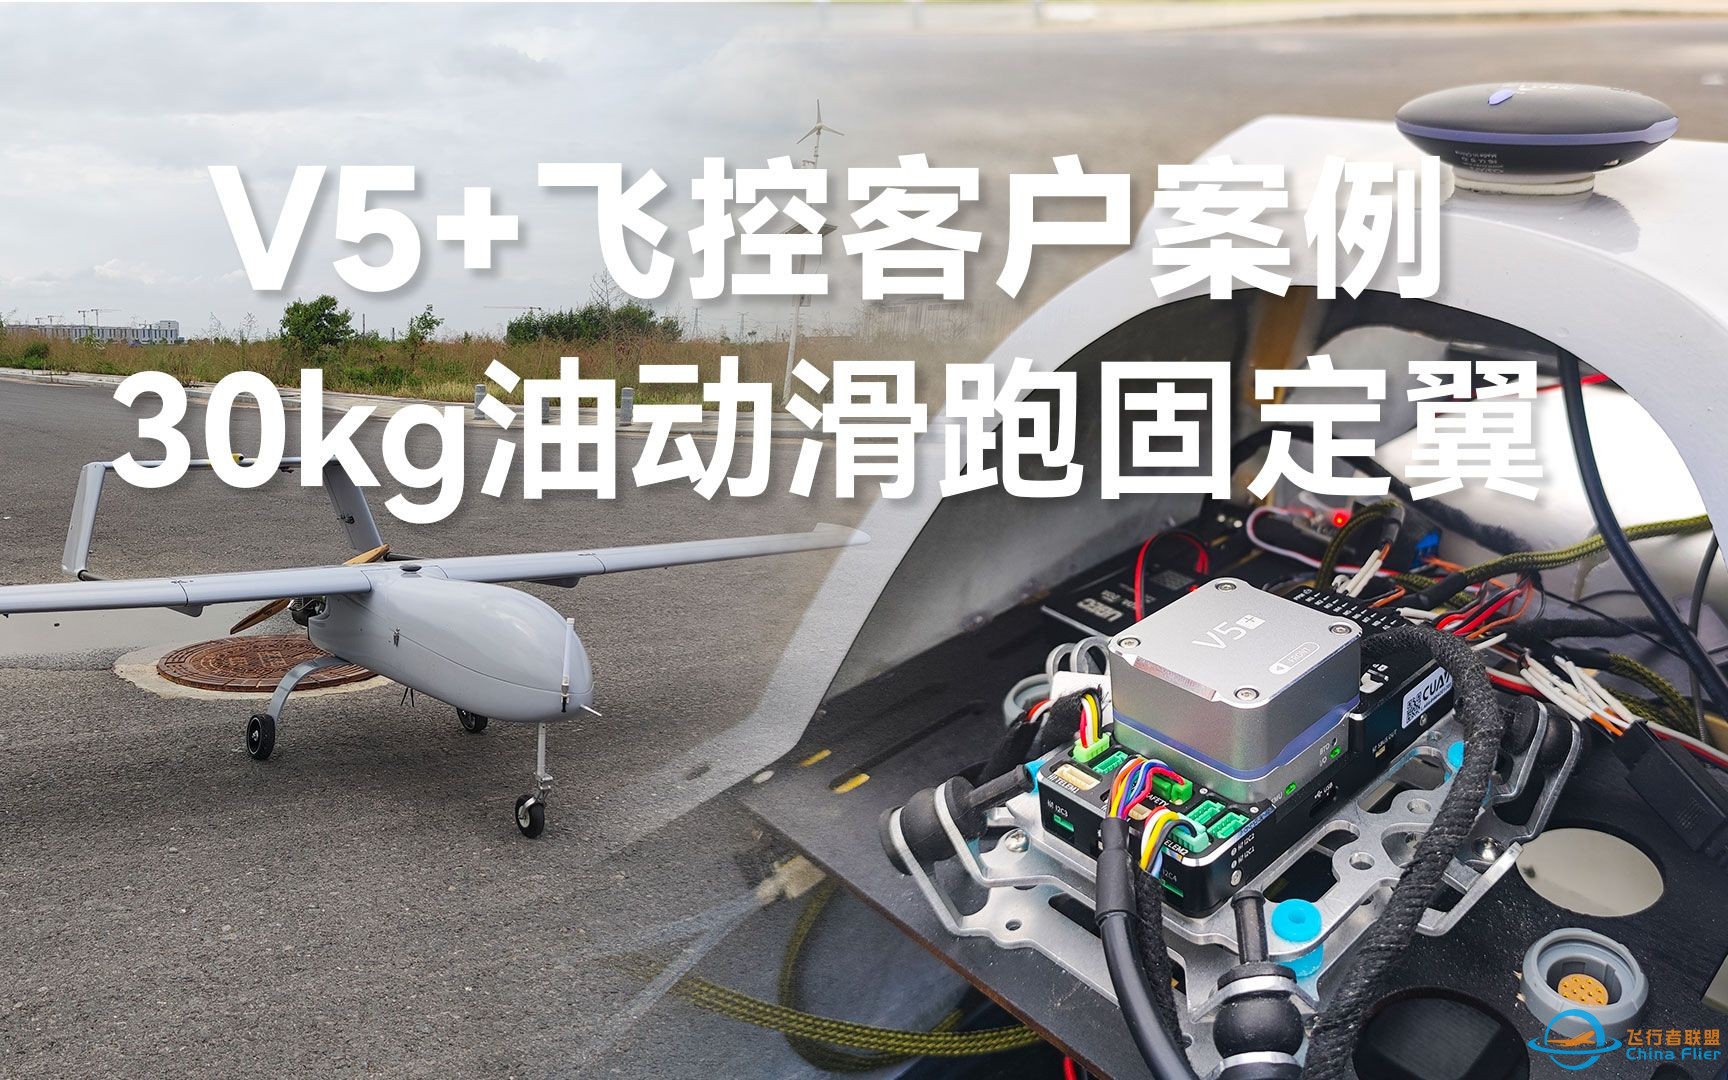 CUAV客户案例 | V5+飞控应用30kg滑跑固定翼-1.jpg